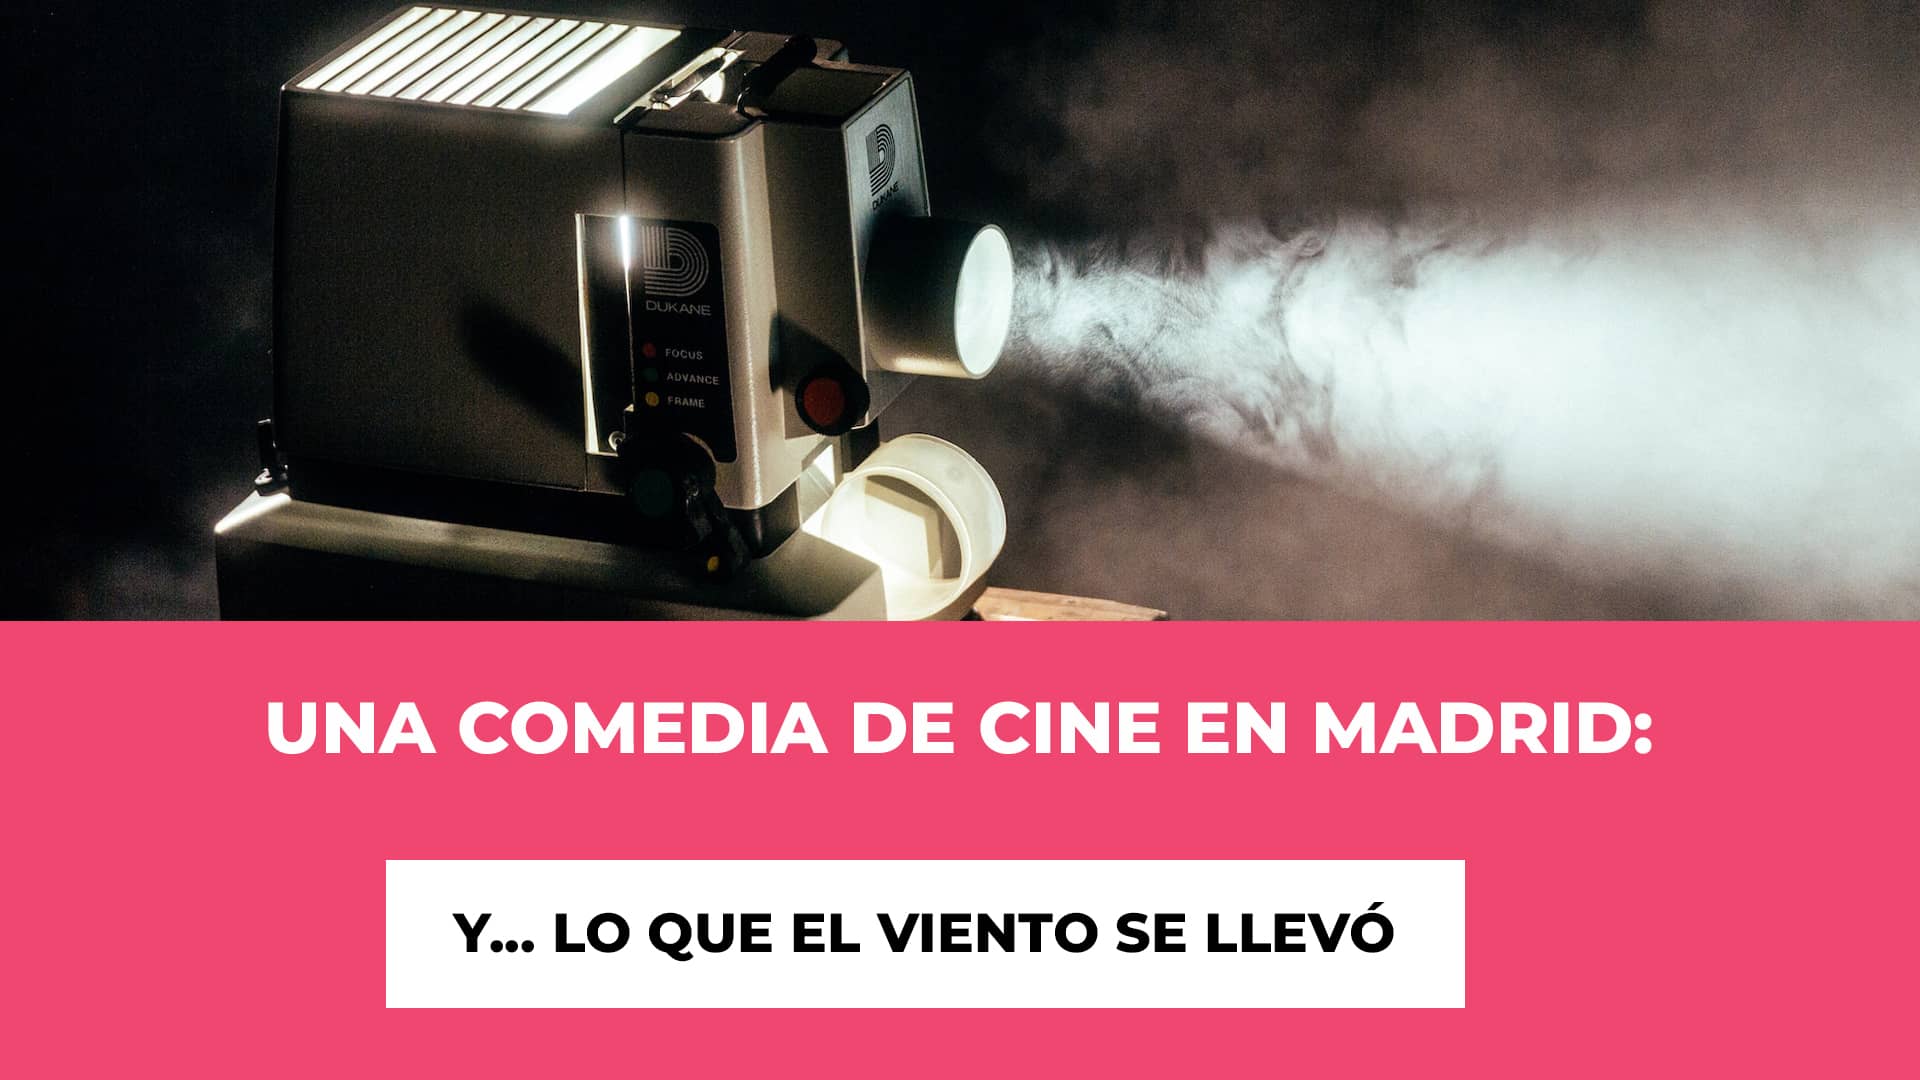 Una Comedia de Cine en Madrid: Y... lo que el viento se llevó - Horario - Fecha - Ubicación - Precios de las entradas